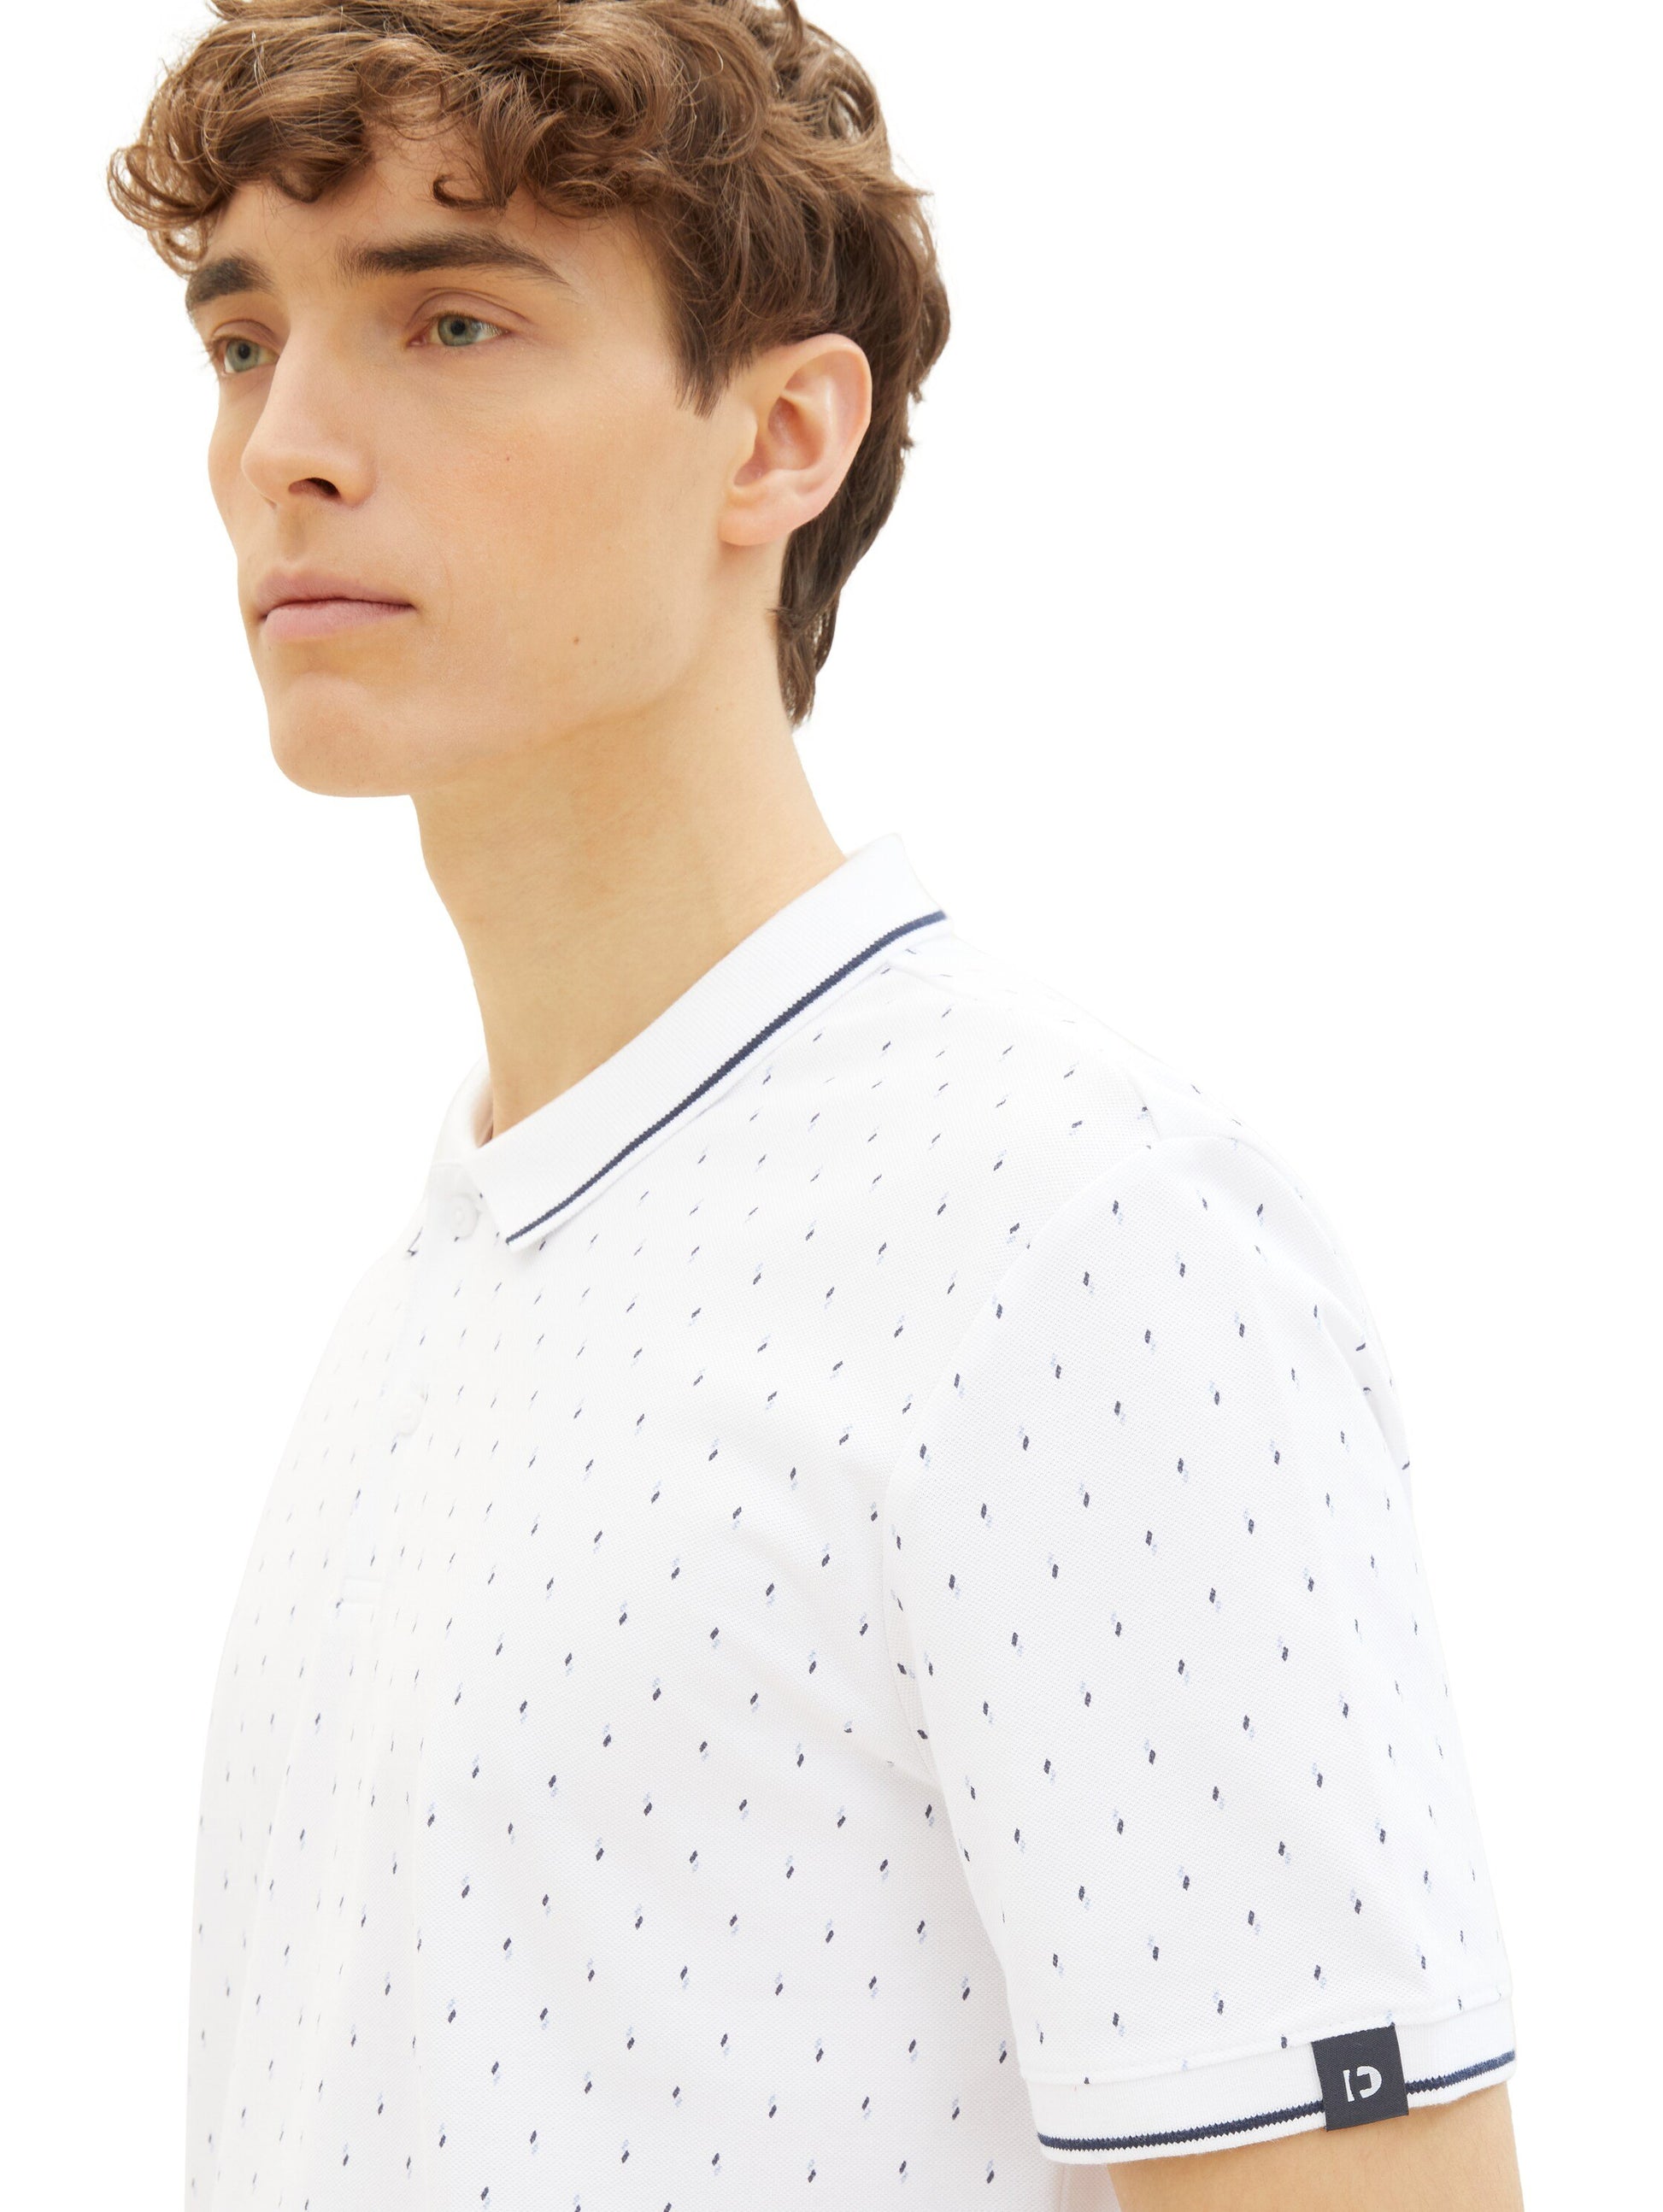 Poloshirt mit Allover-Print (White Mini Squ)